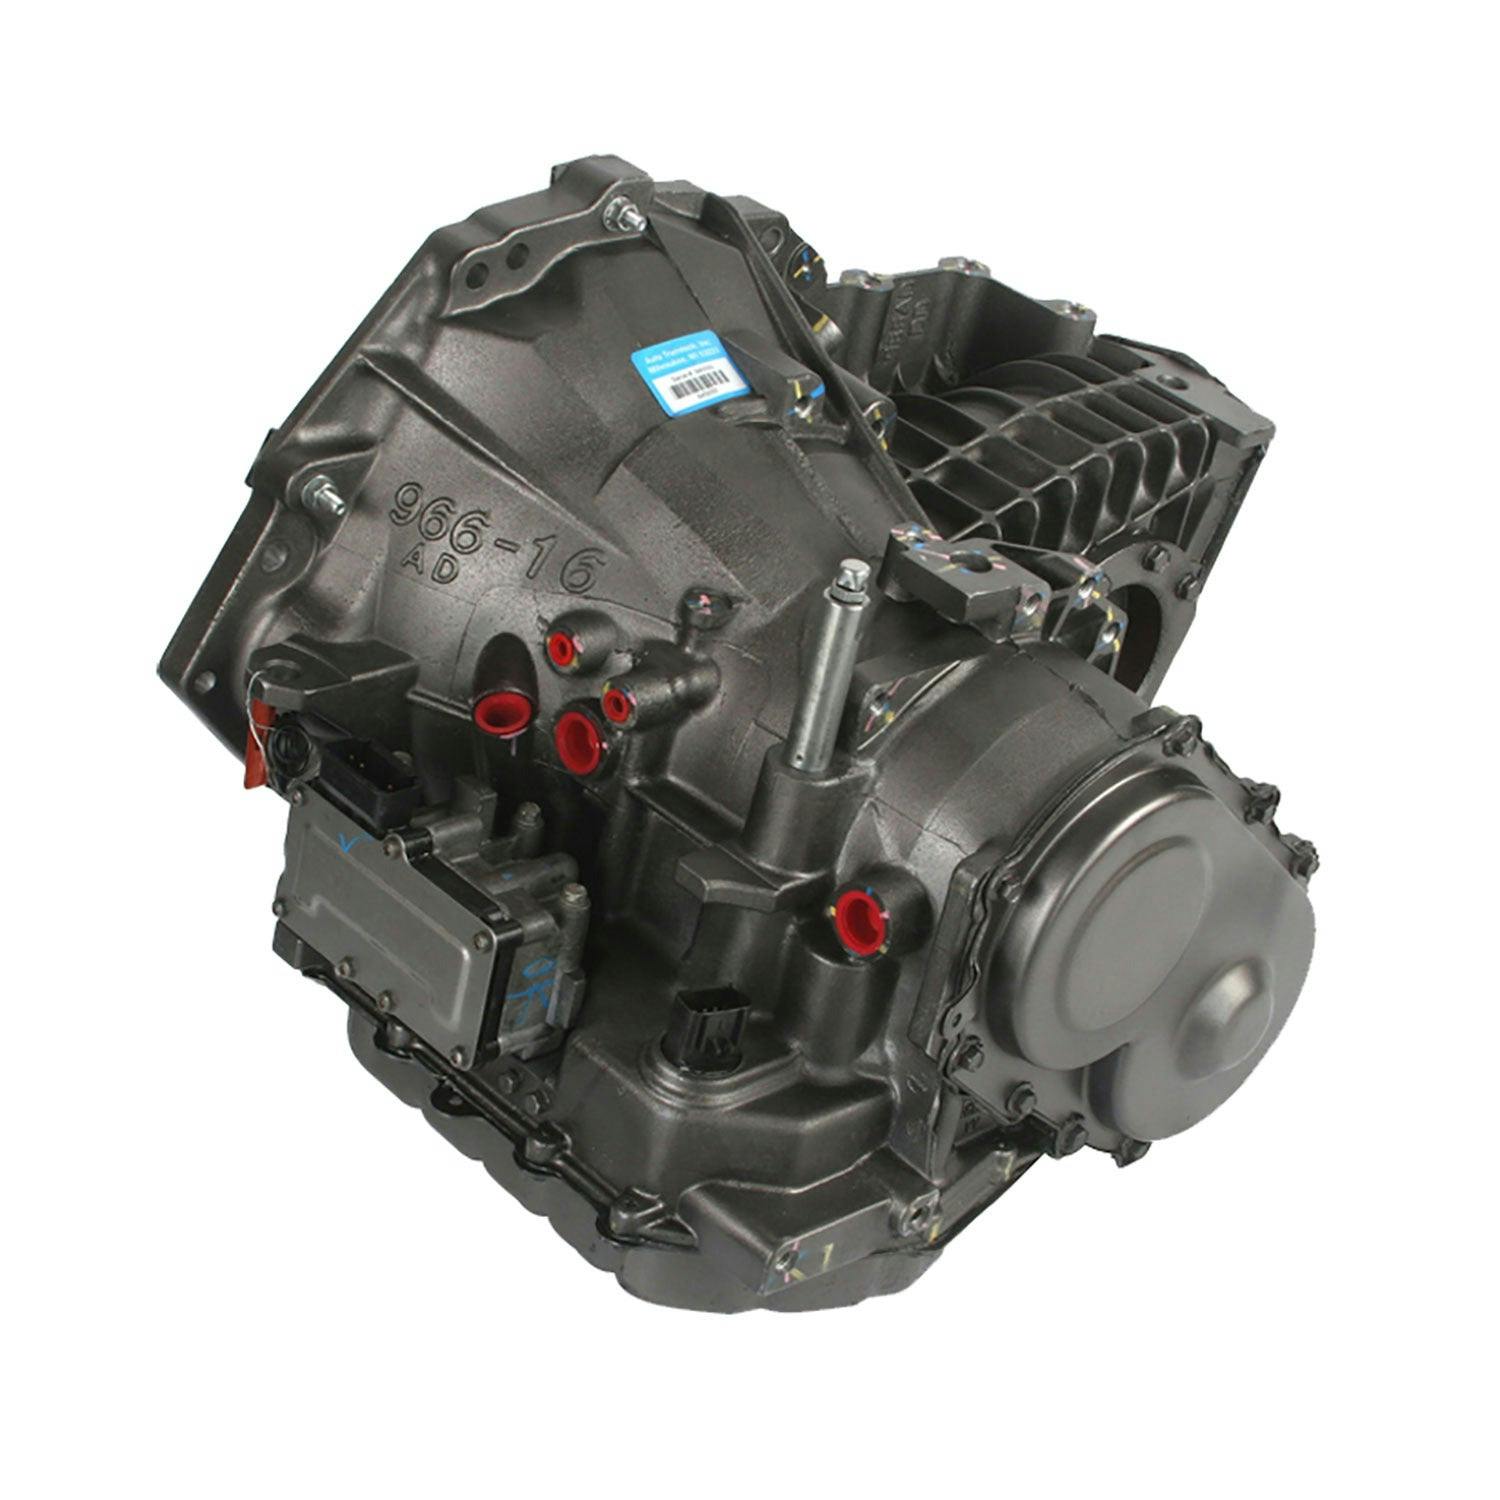 Automatic Transmission for 2007-2008 Chrysler Sebring/Dodge Avenger FWD with 2.7L V6 Engine